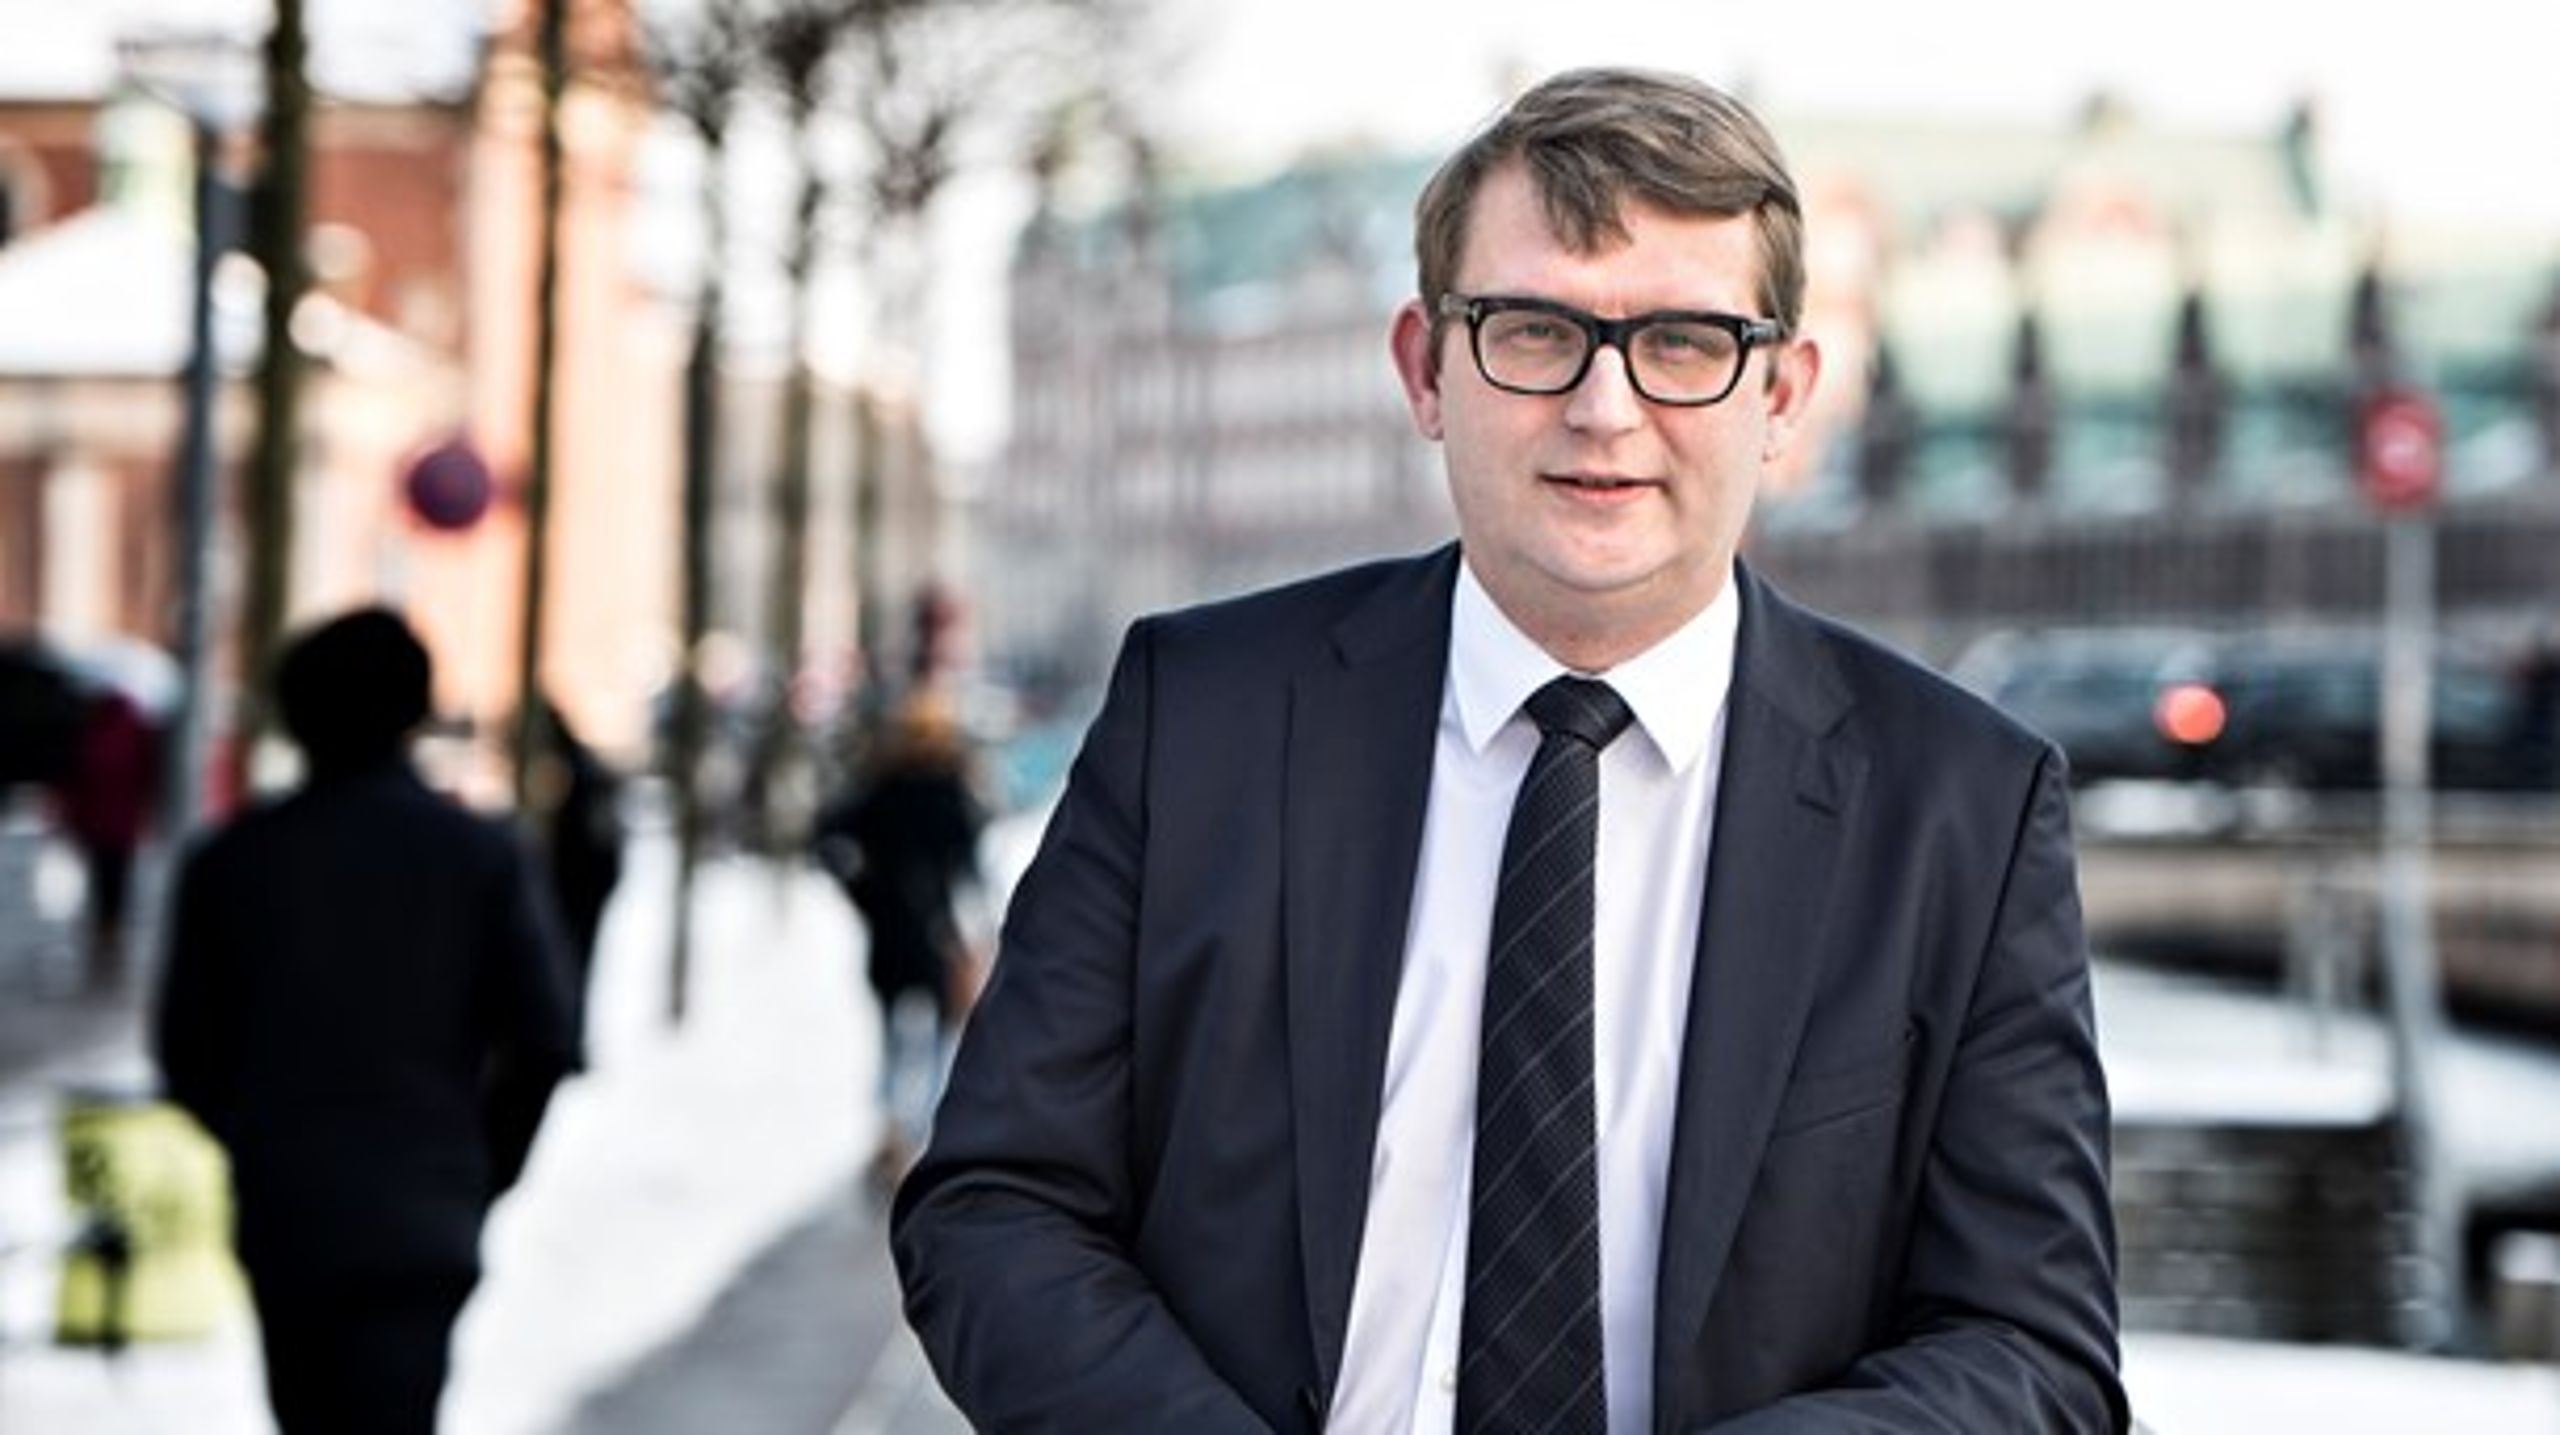 "Jeg er igen blevet bekræftet i, hvor stærkt det går i dansk politik," siger Troels Lund Poulsen.